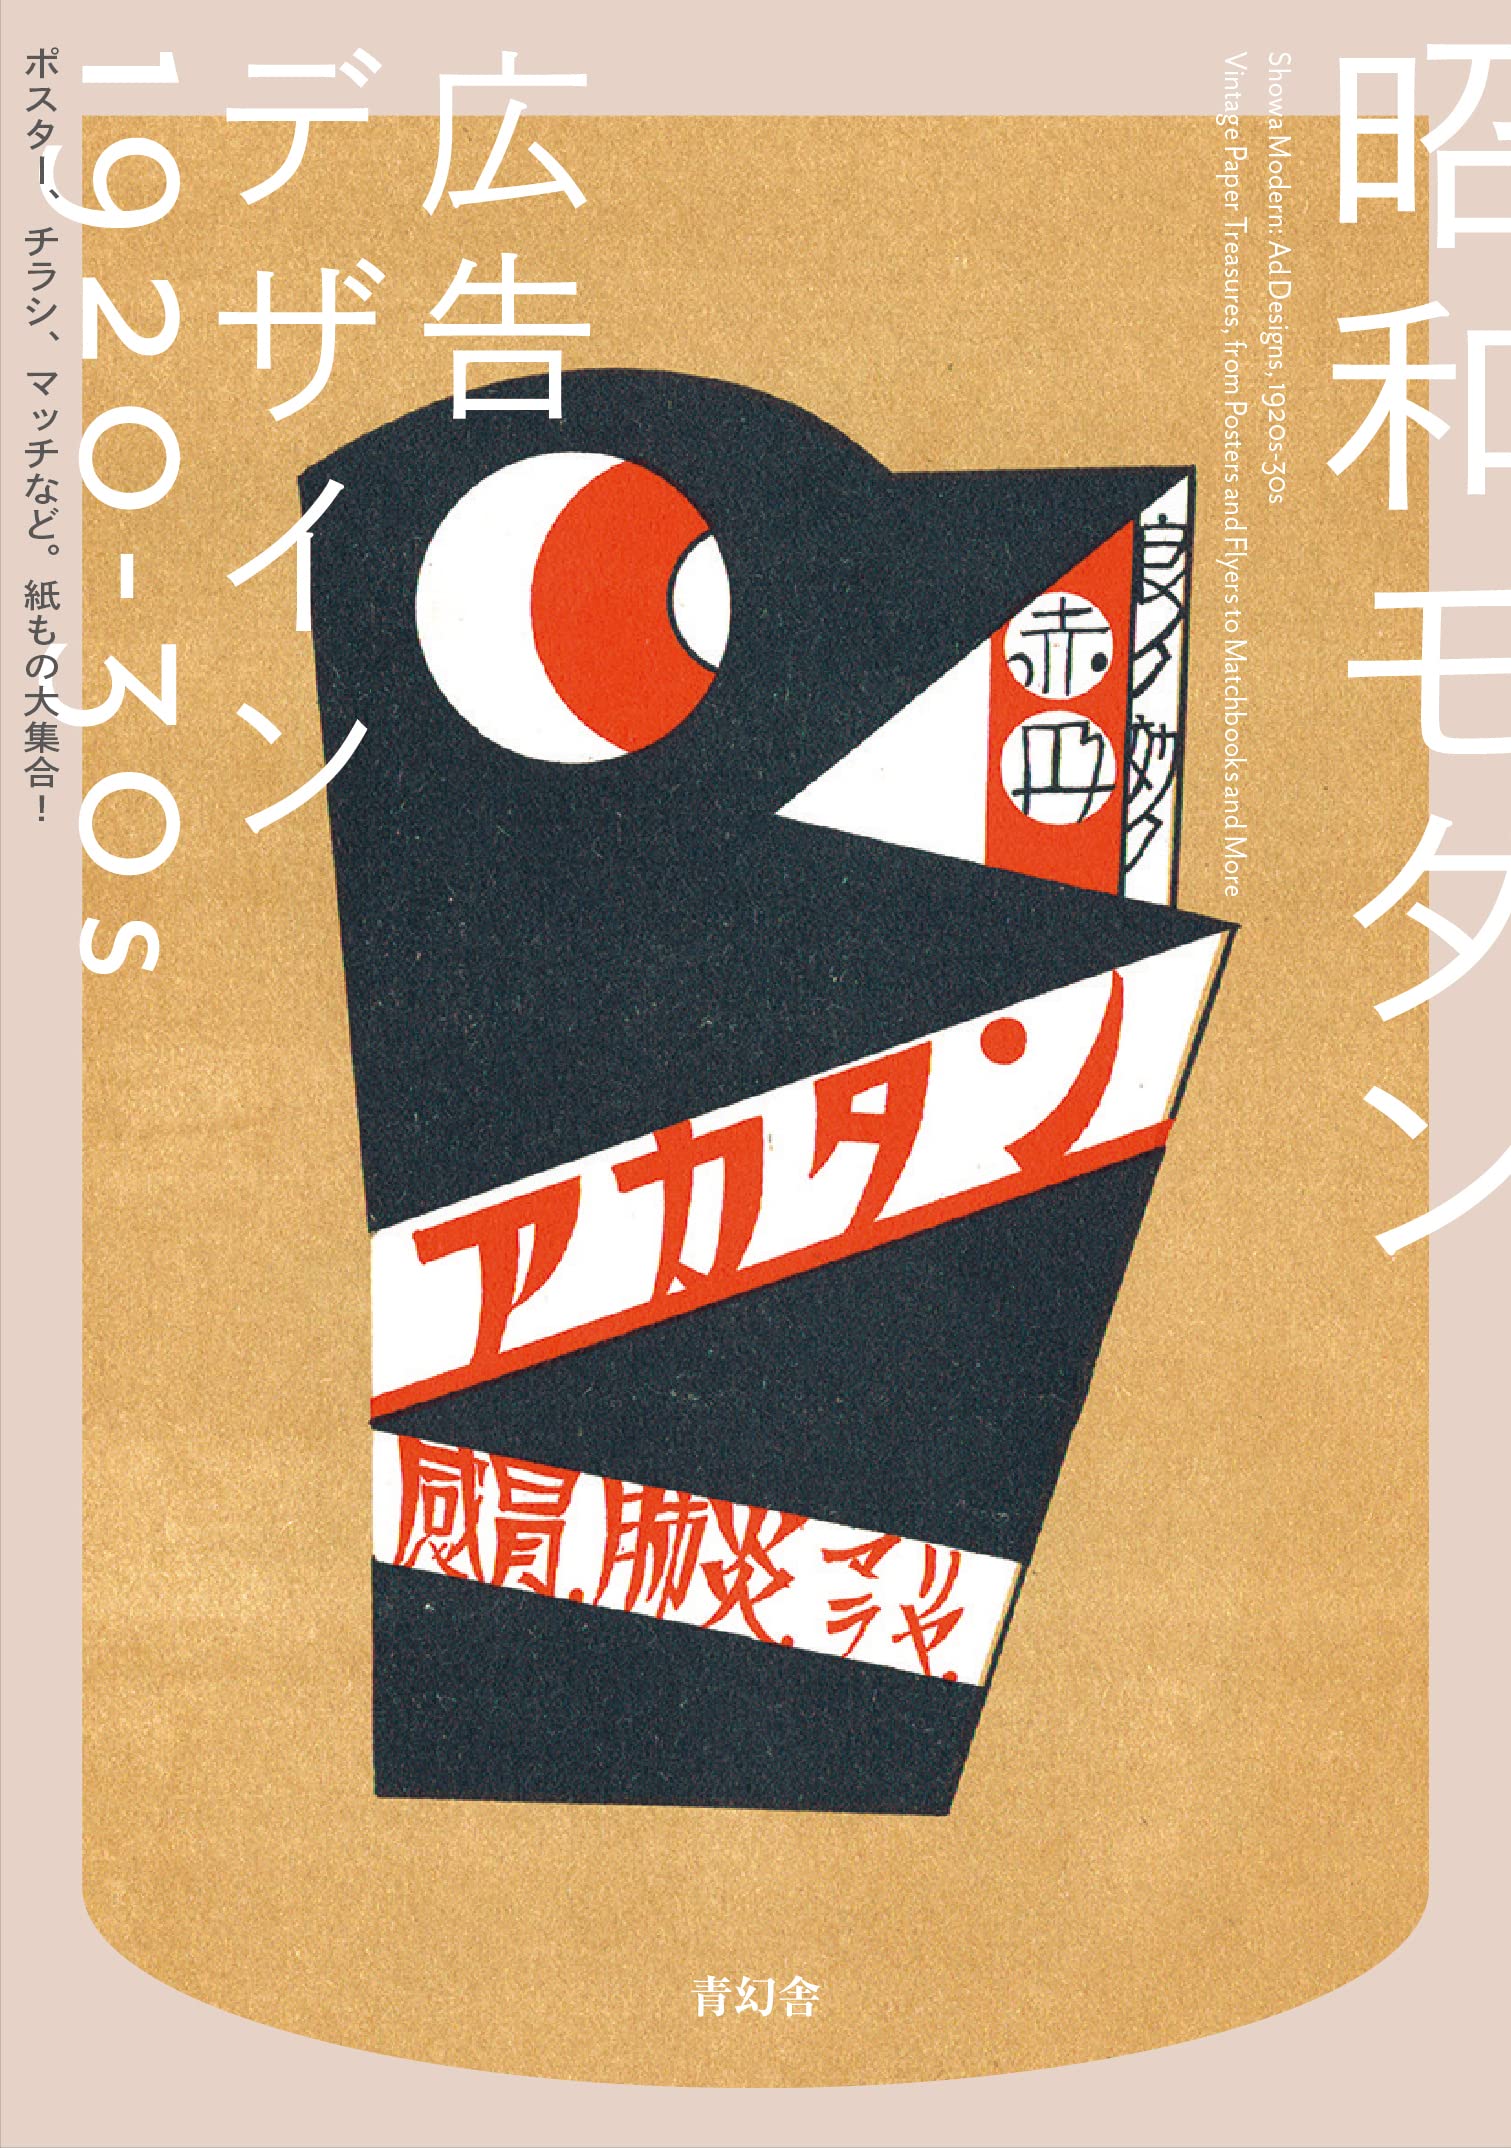 昭和モダン 廣告デザイン 1920-30s ポスタ-、チラシ、マッチなど。紙もの大集合!